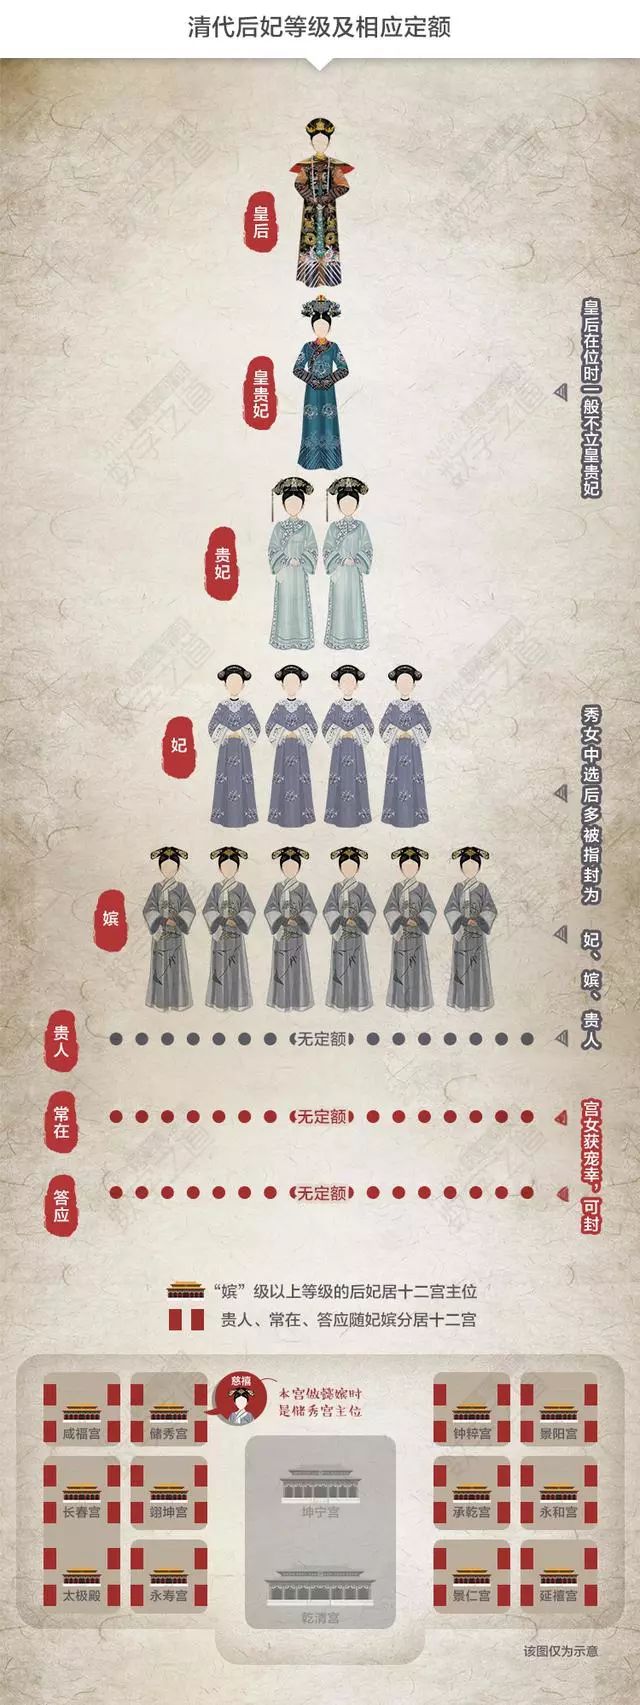 后宫嫔妃职位表图片